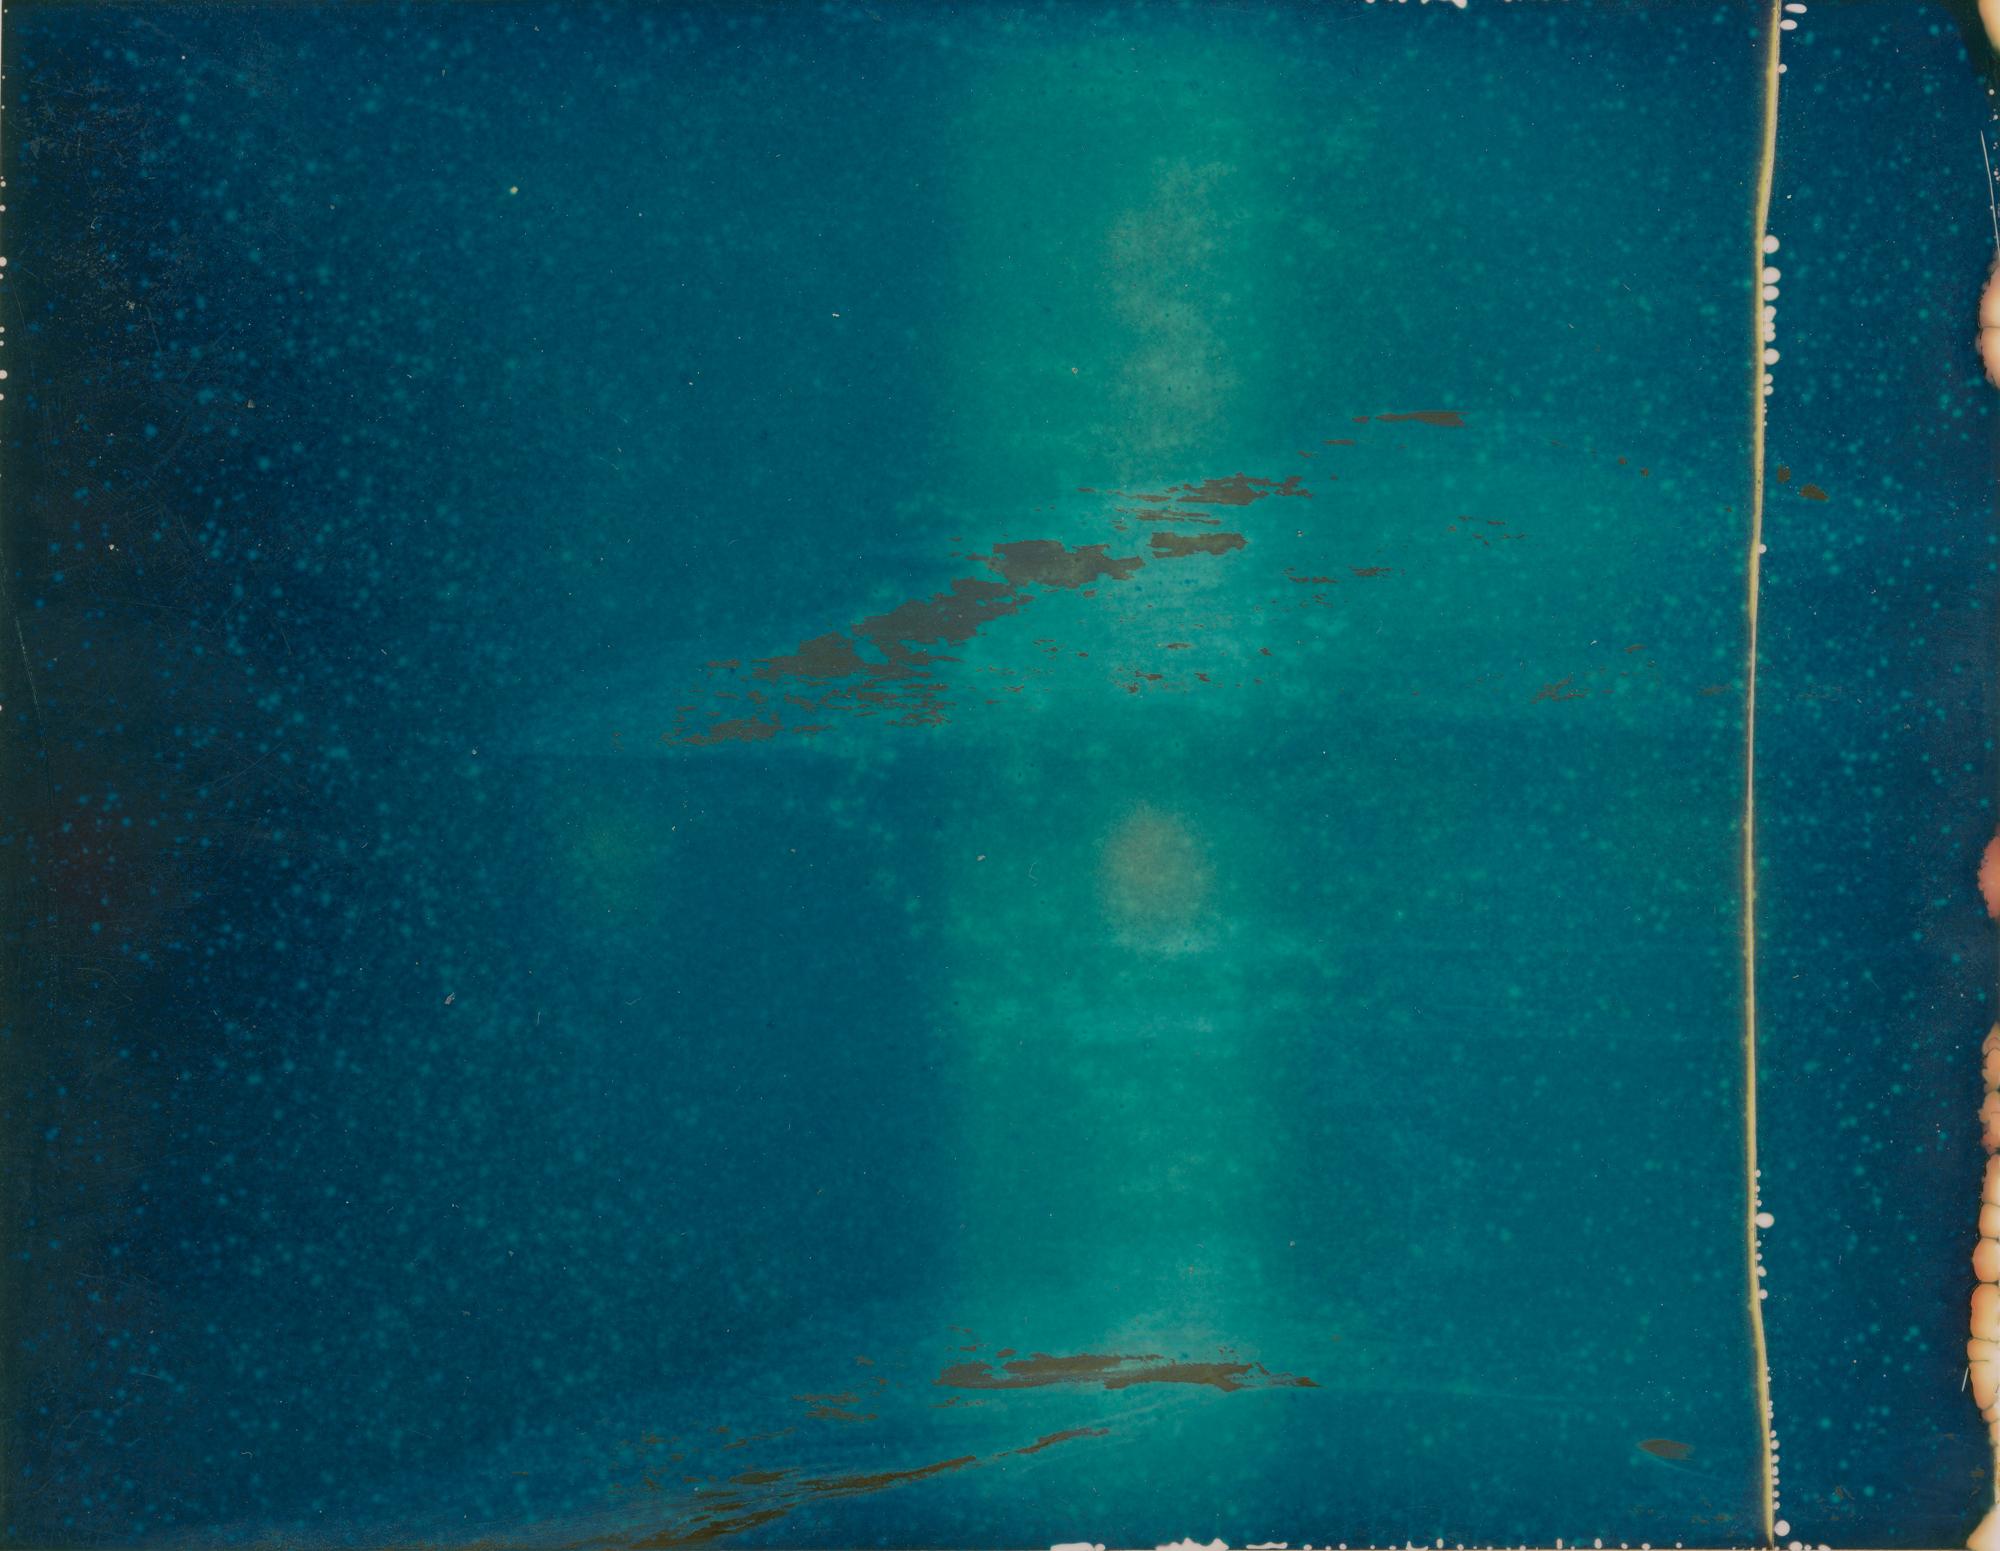 Landscape Photograph Stefanie Schneider - Bleu (déconstructivisme) - Polaroid contemporain, expiré